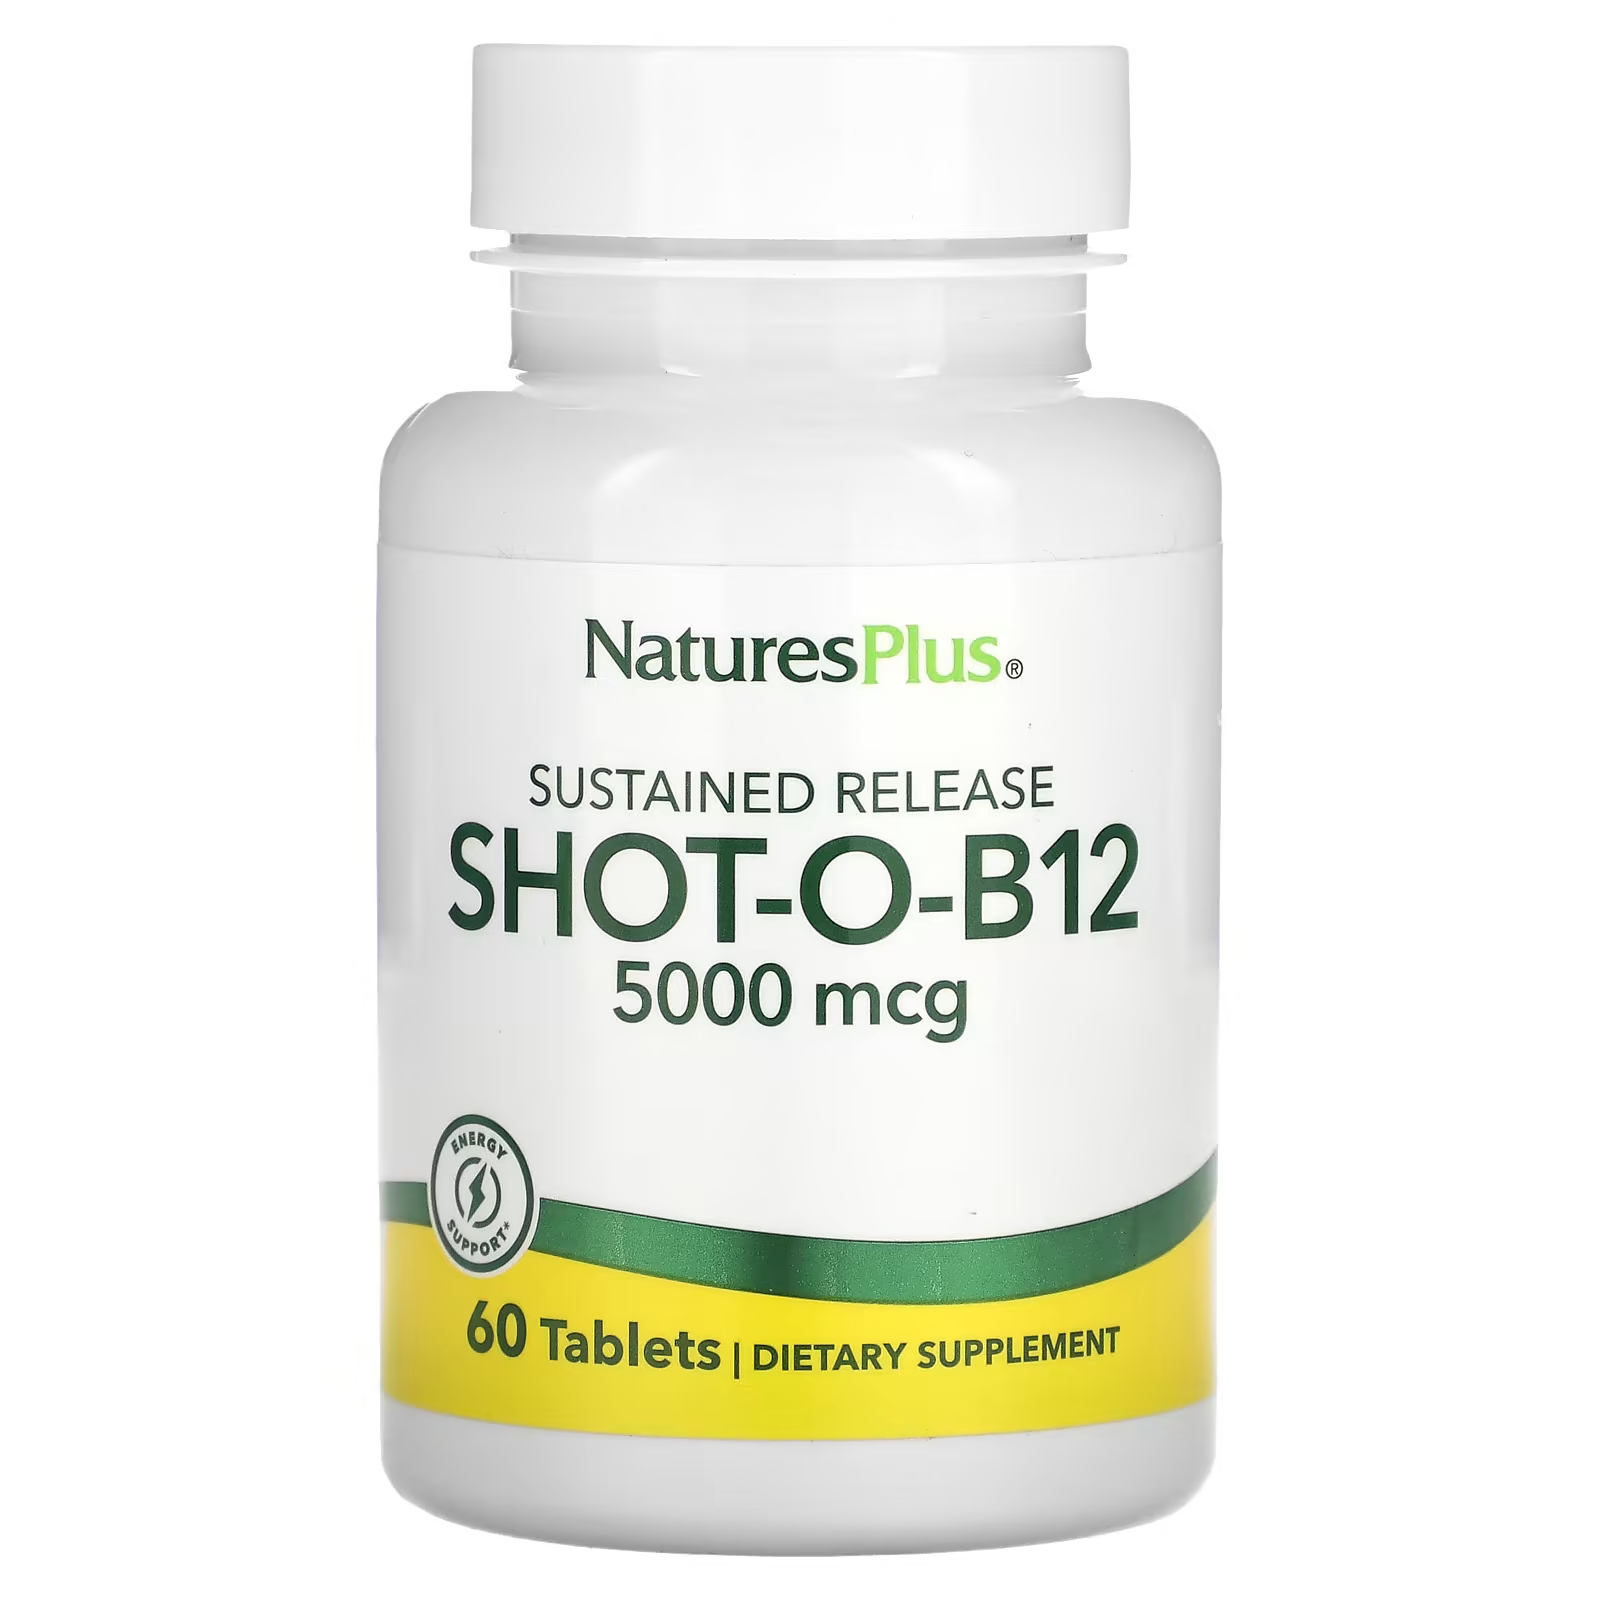 naturesplus shot o b12 5000 мкг 30 таблеток Биологически активная добавка NaturesPlus, Shot-O-B12 с замедленным высвобождением, 5000 мкг., 60 таблеток